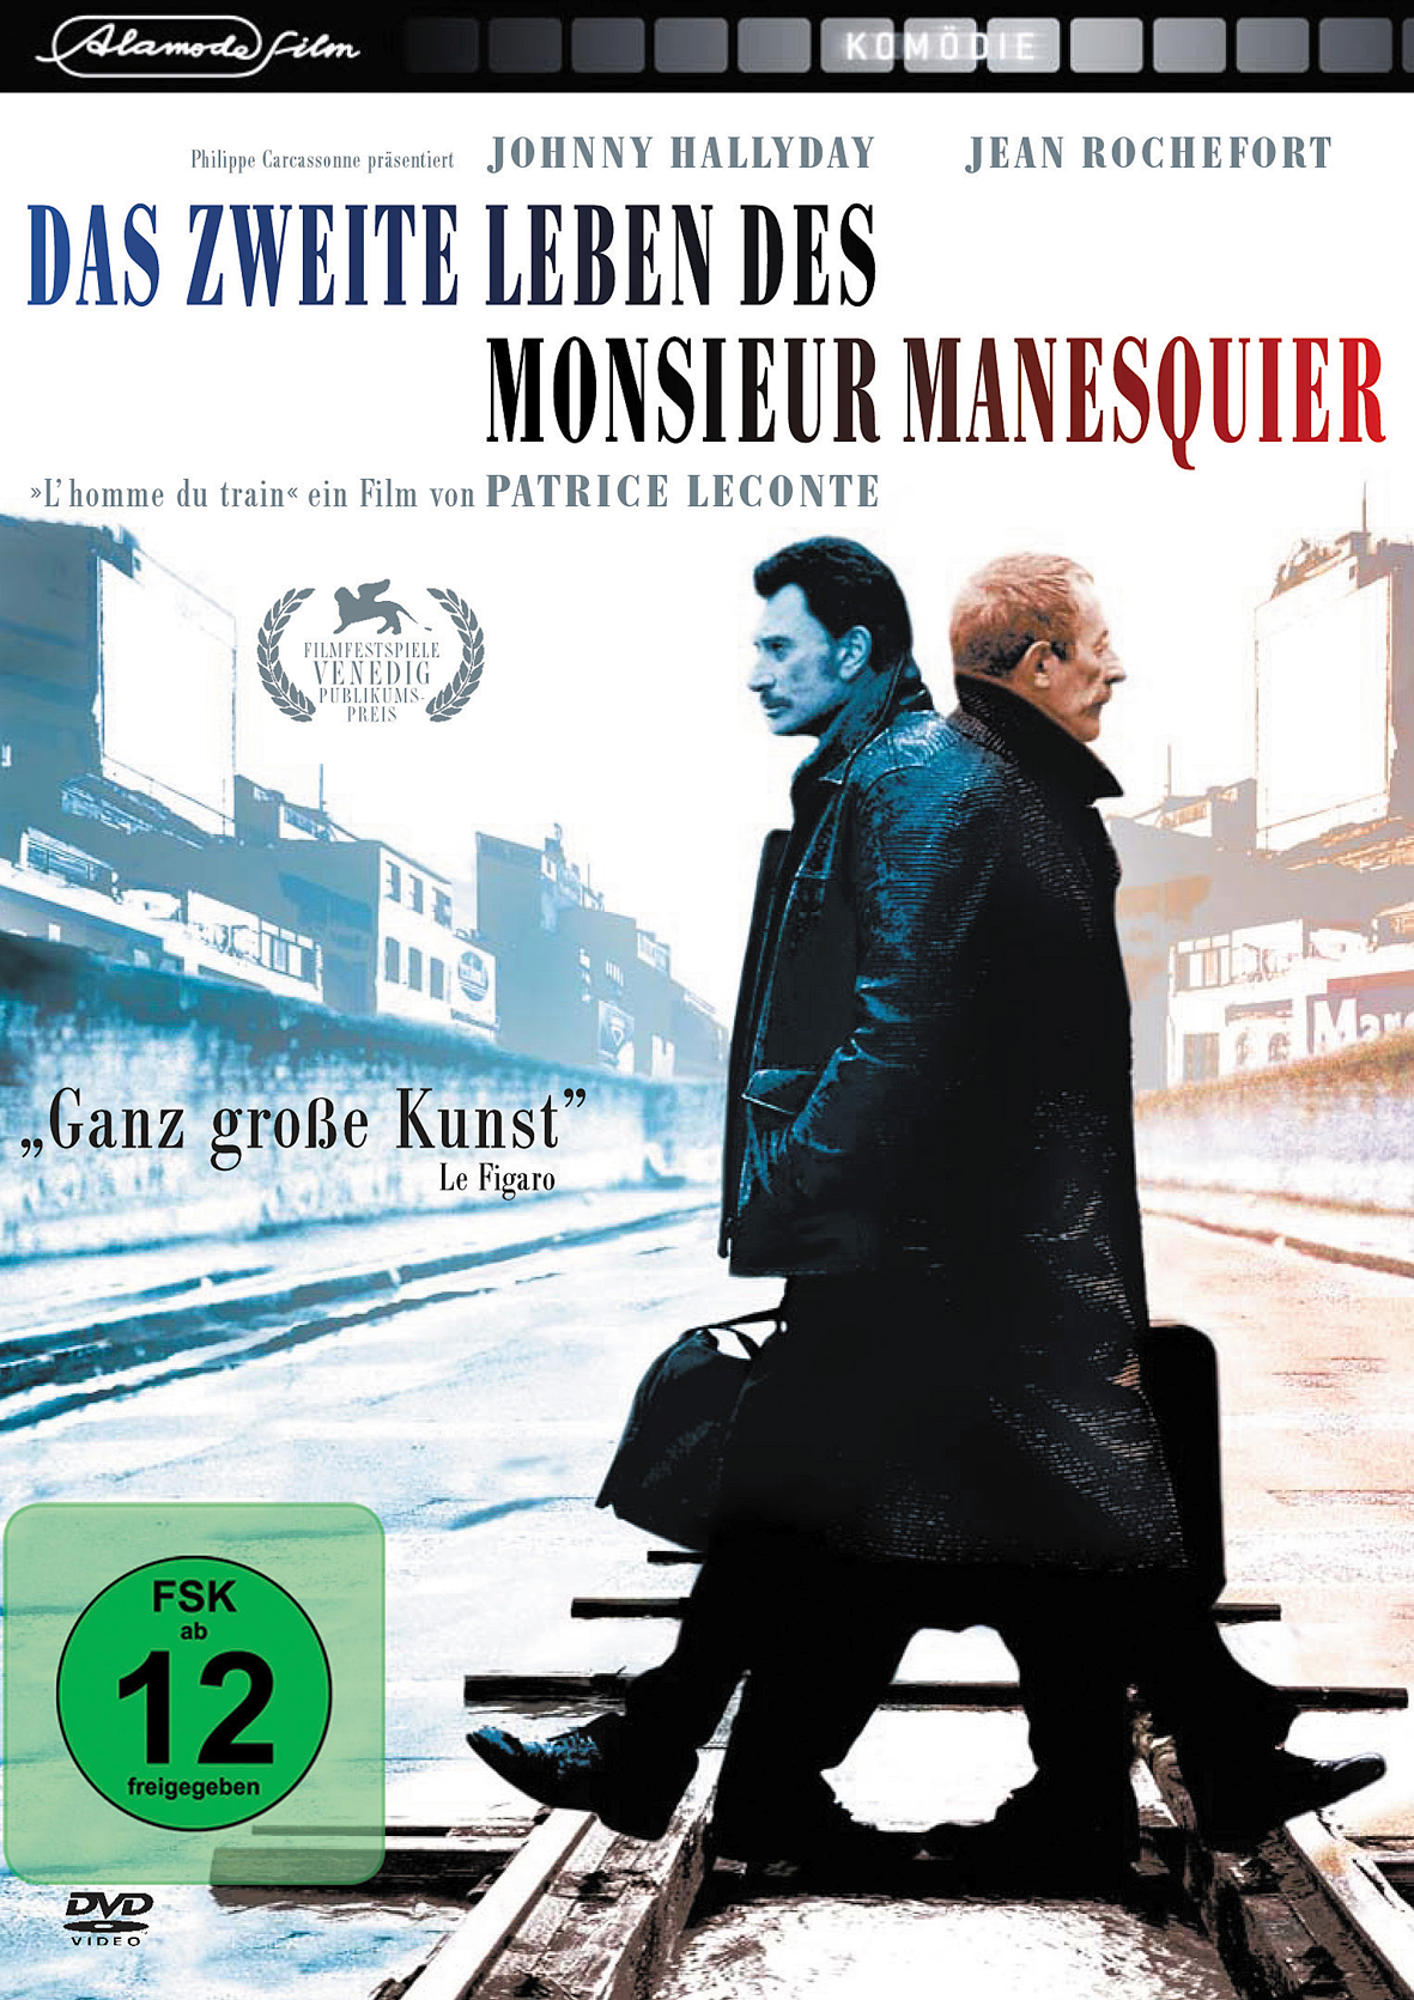 Leben Das Monsieur DVD des Mannesquier zweite